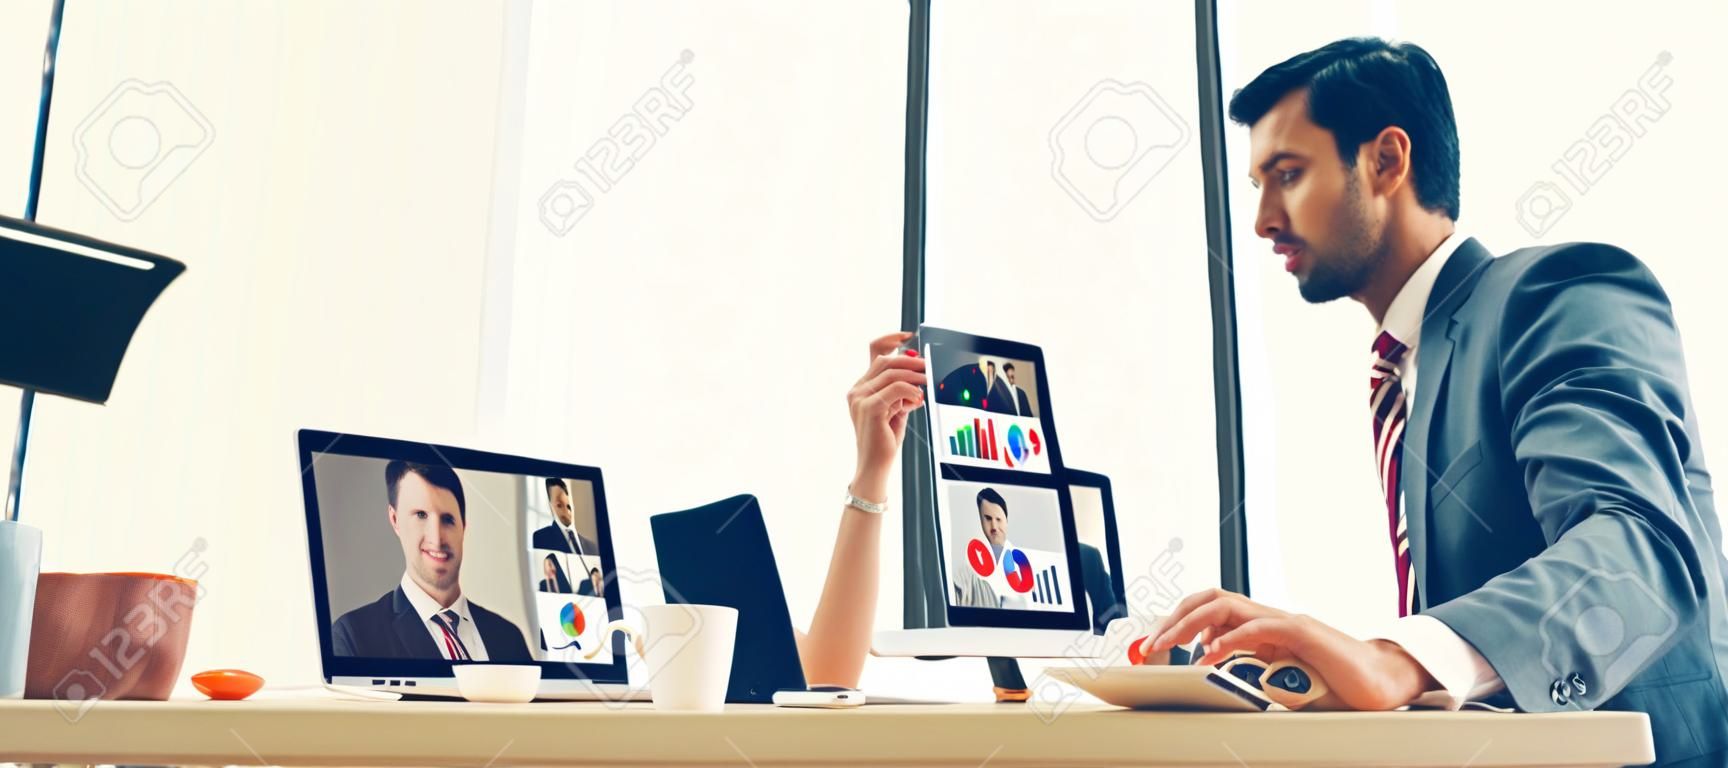 Gente de negocios de grupos de videollamadas que se reúnen en un lugar de trabajo virtual o en una oficina remota. Llamada de conferencia de teletrabajo utilizando tecnología de video inteligente para comunicarse con un colega en negocios corporativos profesionales.